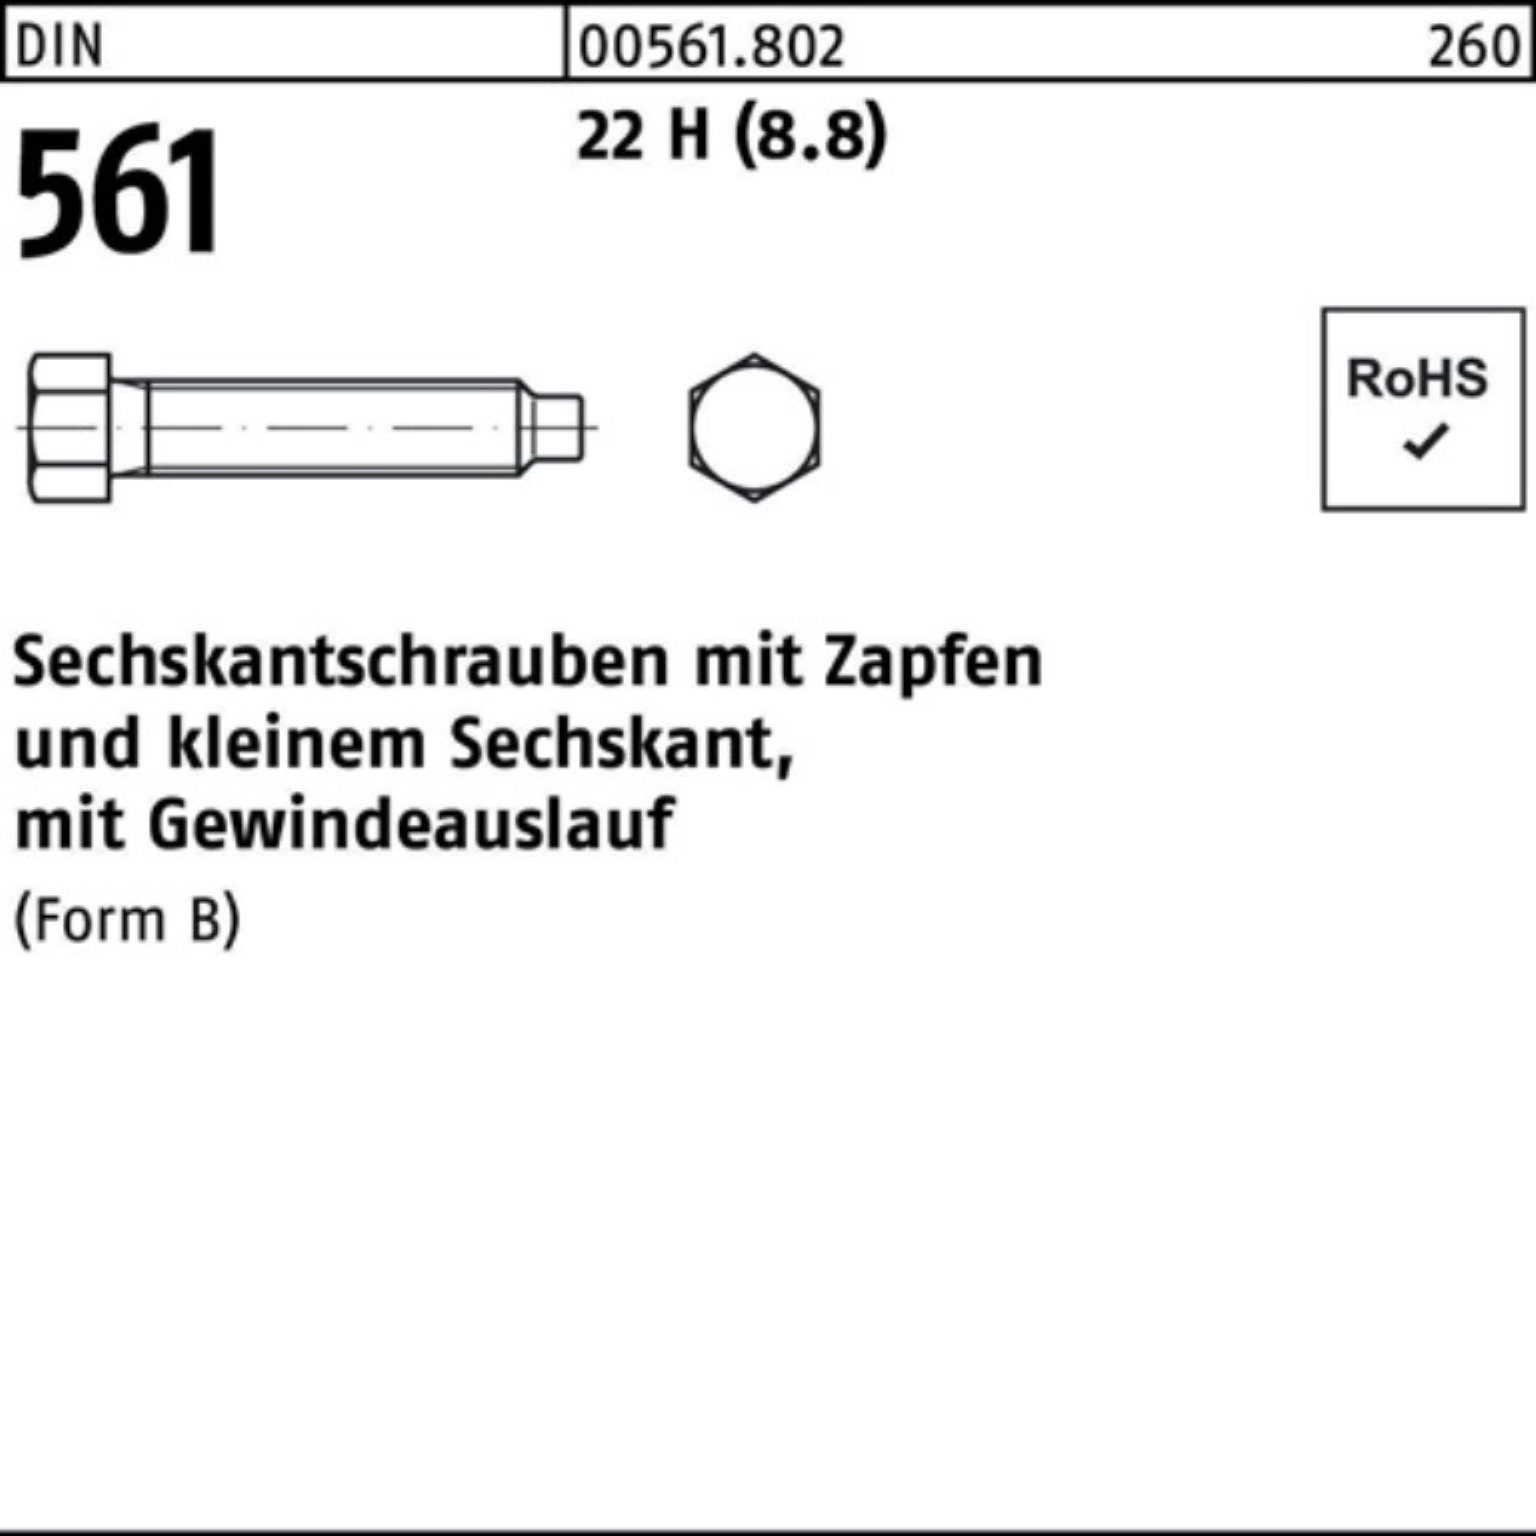 Preisermäßigung Reyher Sechskantschraube 100er Pack Zapfen 140 DIN BM 1 30x (8.8) 561 Sechskantschraube H St 22